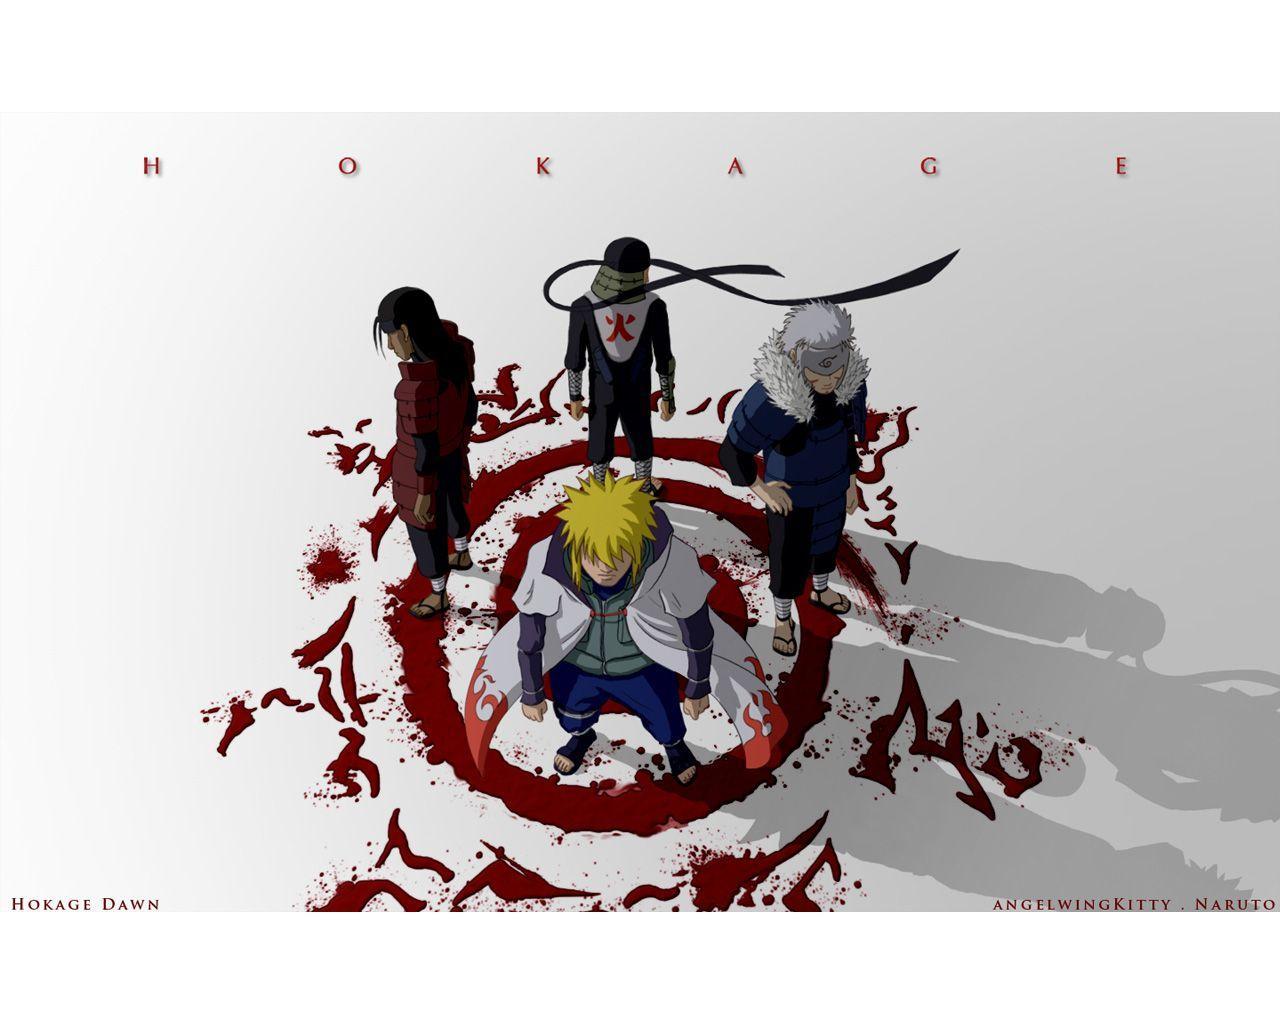 Naruto Shippuden Wallpaper 22 Background. Wallruru